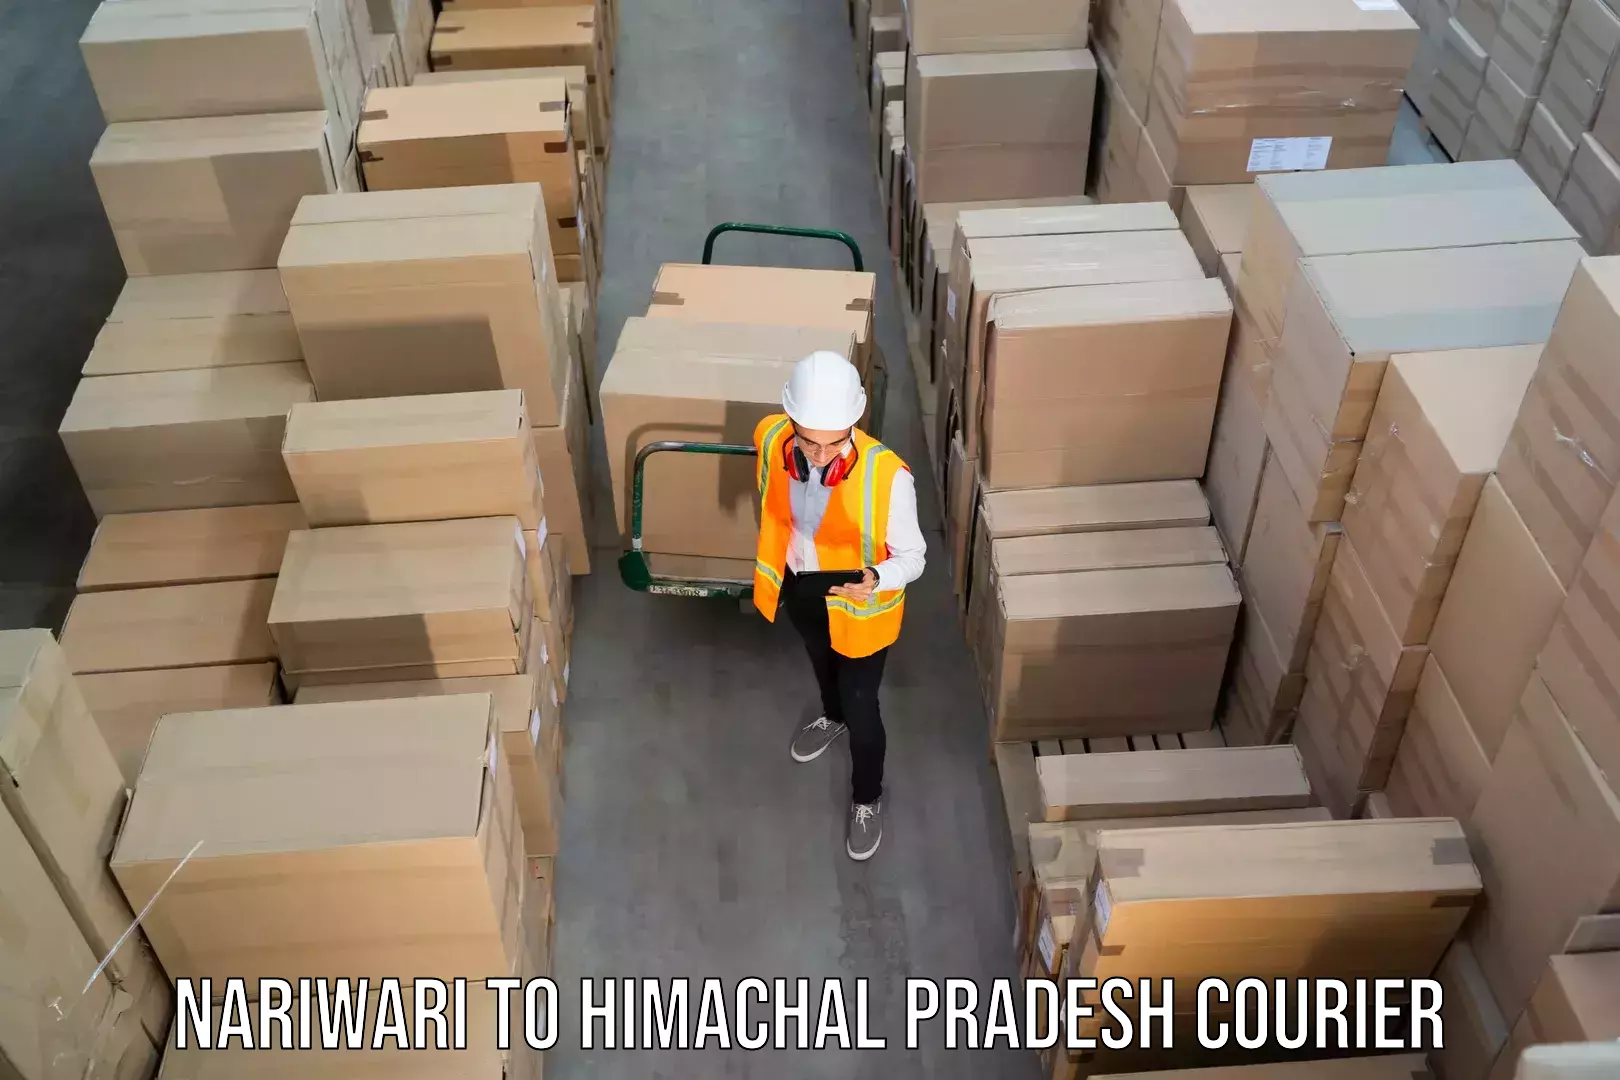 Next-generation courier services Nariwari to Himachal Pradesh